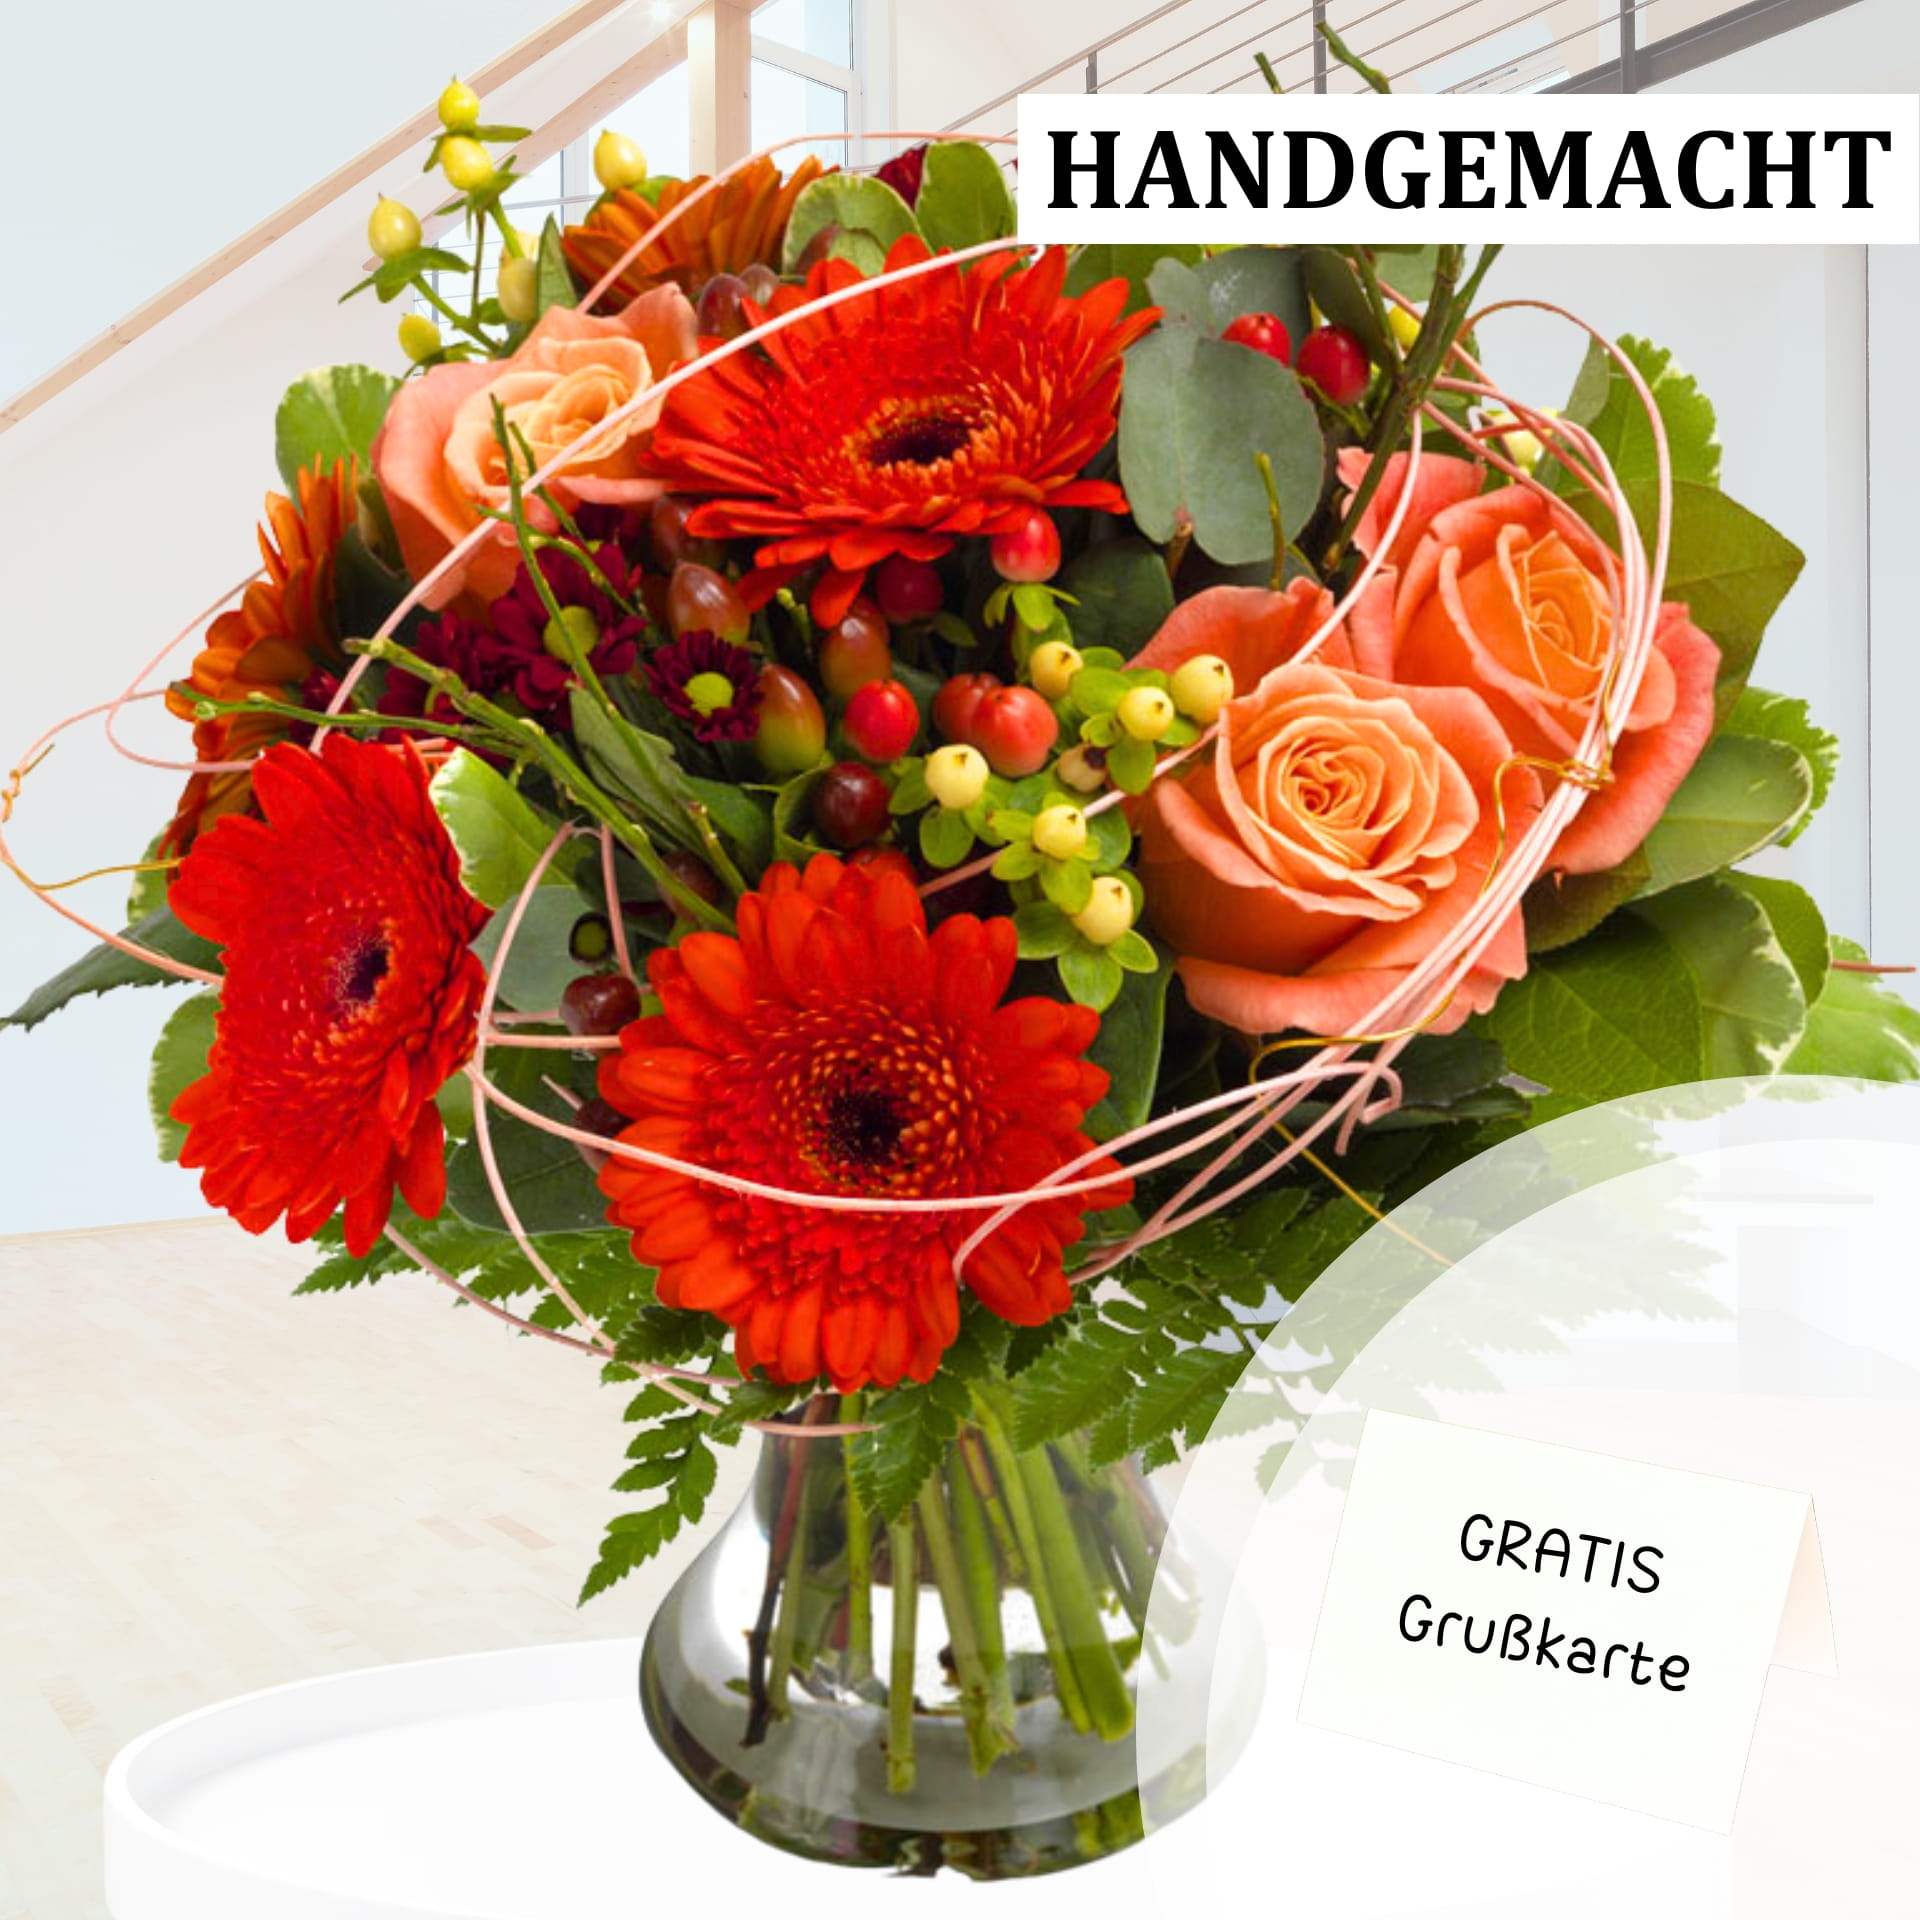 Handgemachter Blumenstrauß aus roten Gerbera und cremefarbenen Rosen mit grünem Laub und dekorativen Beeren, inklusive kostenloser Grußkarte